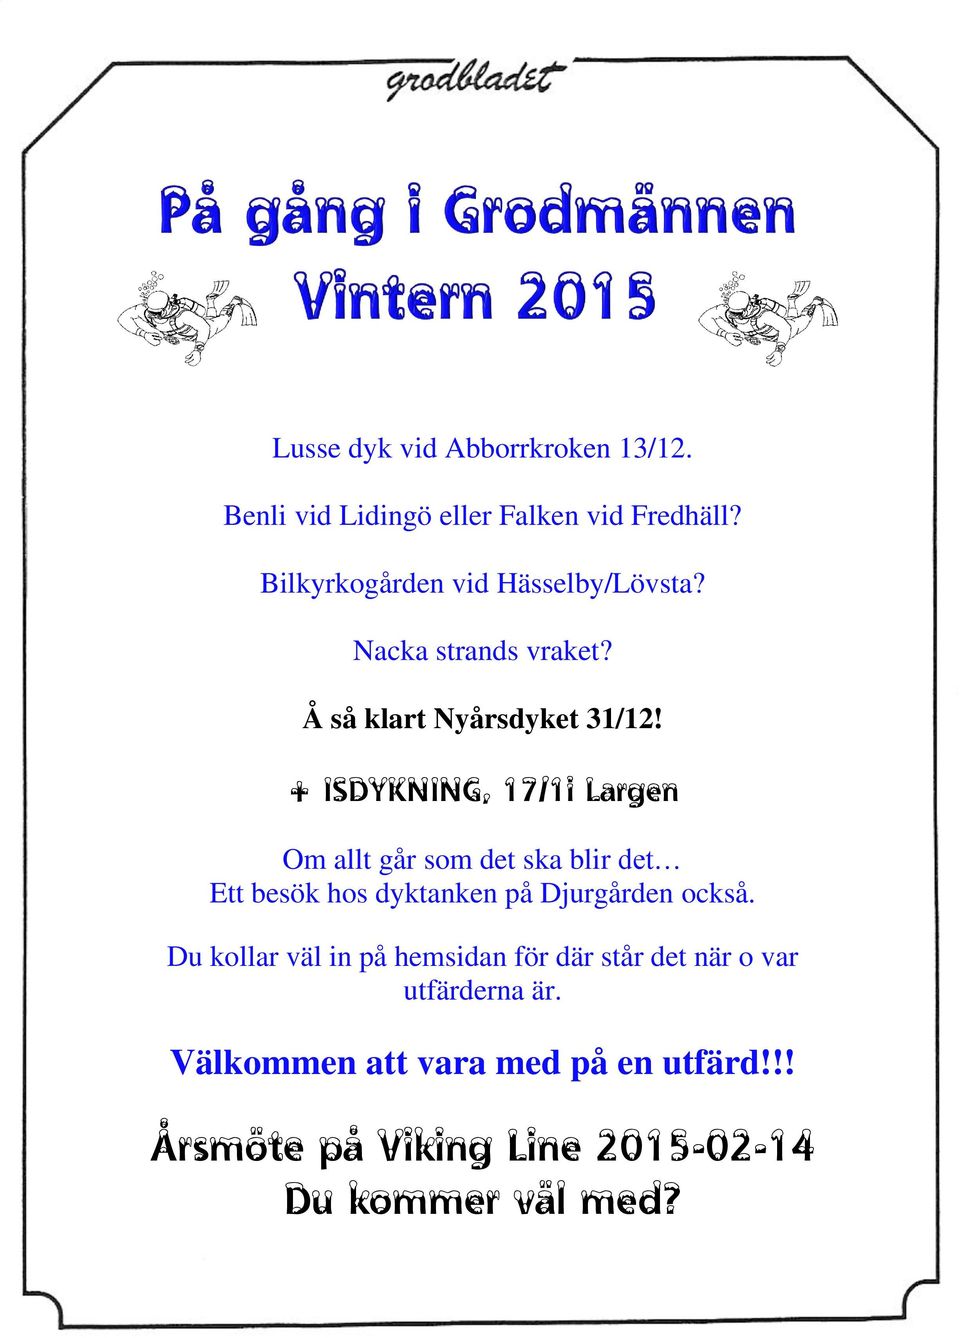 + ISDYKNING, 17/1i Largen Om allt går som det ska blir det Ett besök hos dyktanken på Djurgården också.